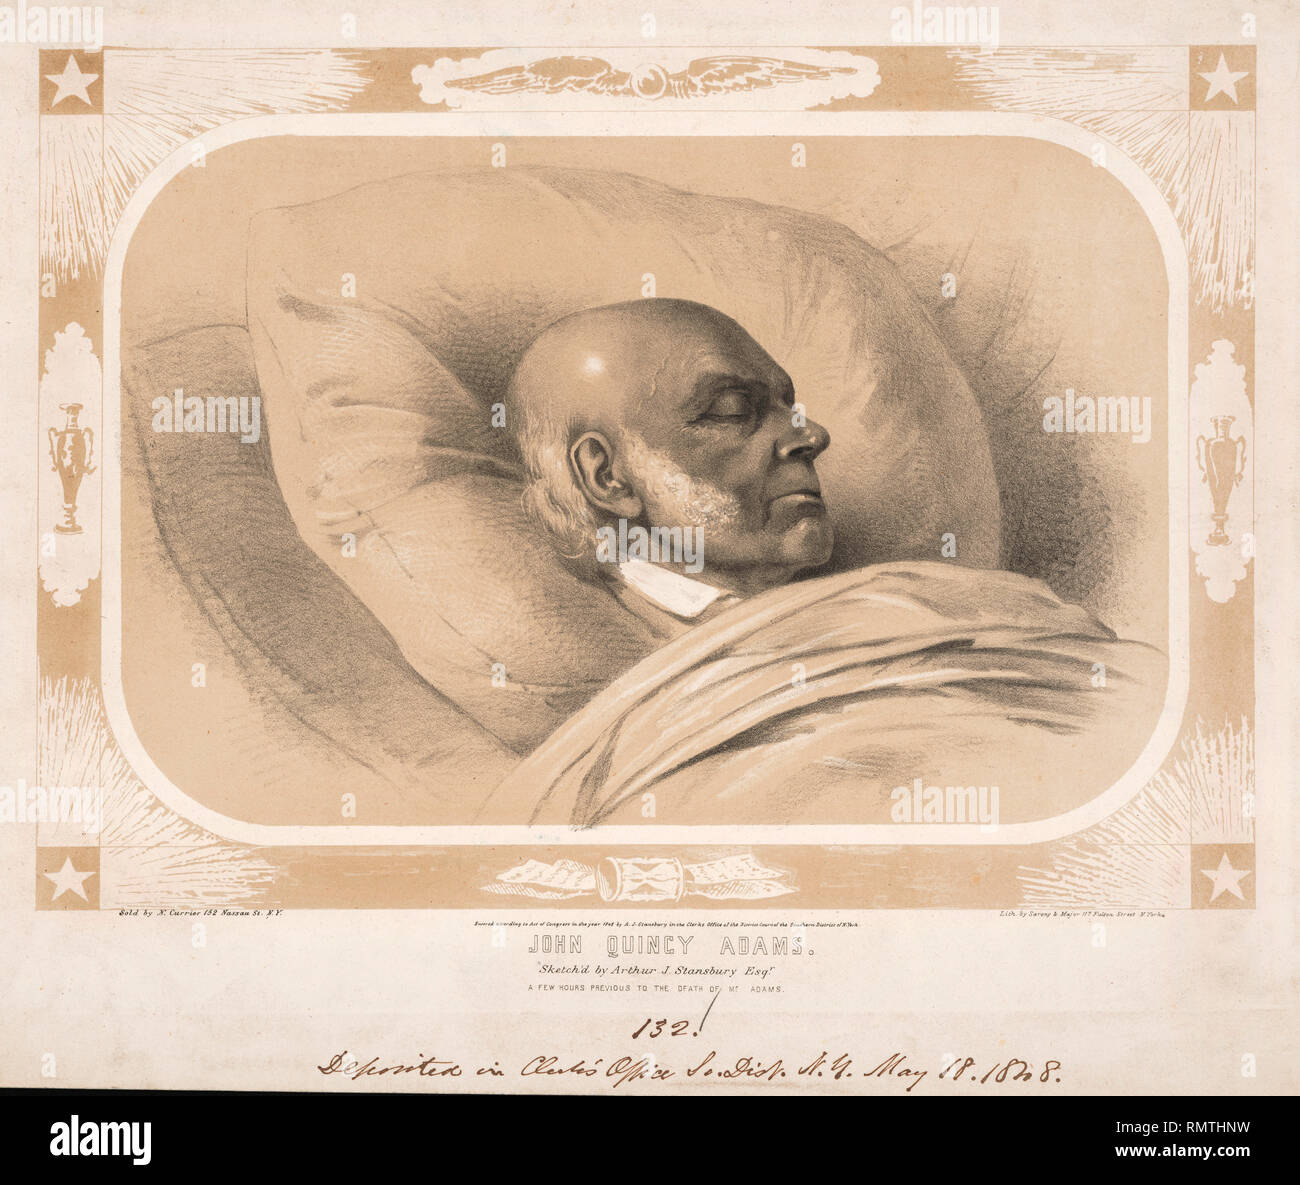 John Quincy Adams, disegnata da Arthur J. Stansbury Esq., poche ore precedenti la morte del sig. Adams, litografia da Sarony & Major, New York, 1848 Foto Stock